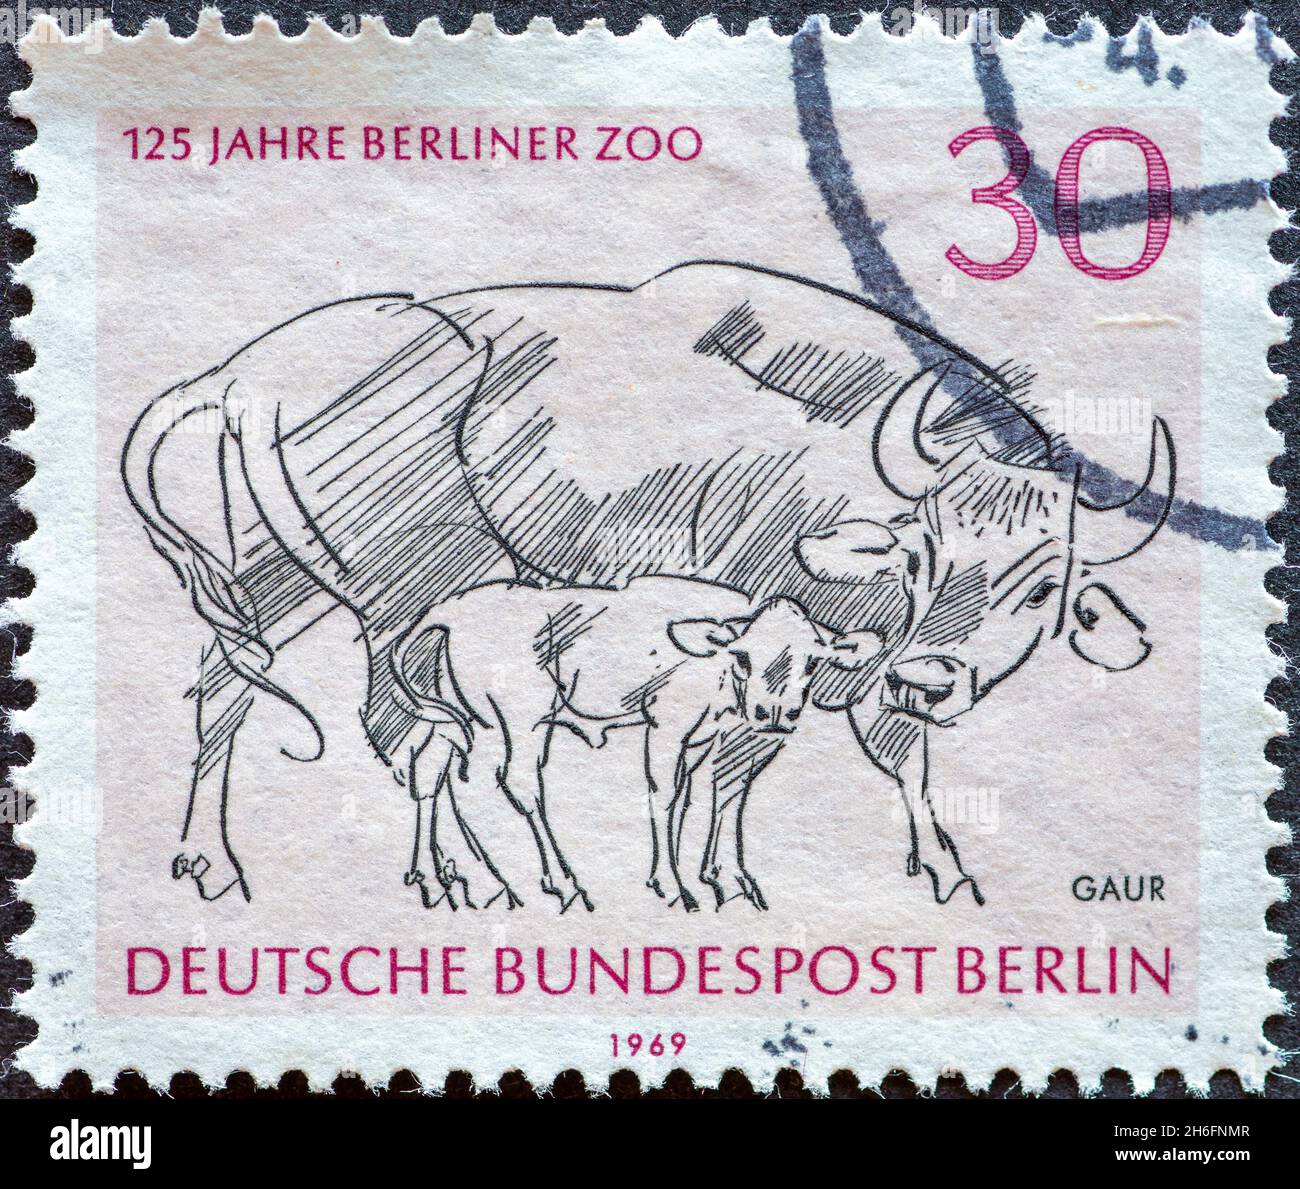 ALLEMAGNE, Berlin - VERS 1969: Timbre-poste d'Allemagne, Berlin montrant un dessin à l'occasion: 125 ans de zoo de Berlin.Animal: gaur Banque D'Images